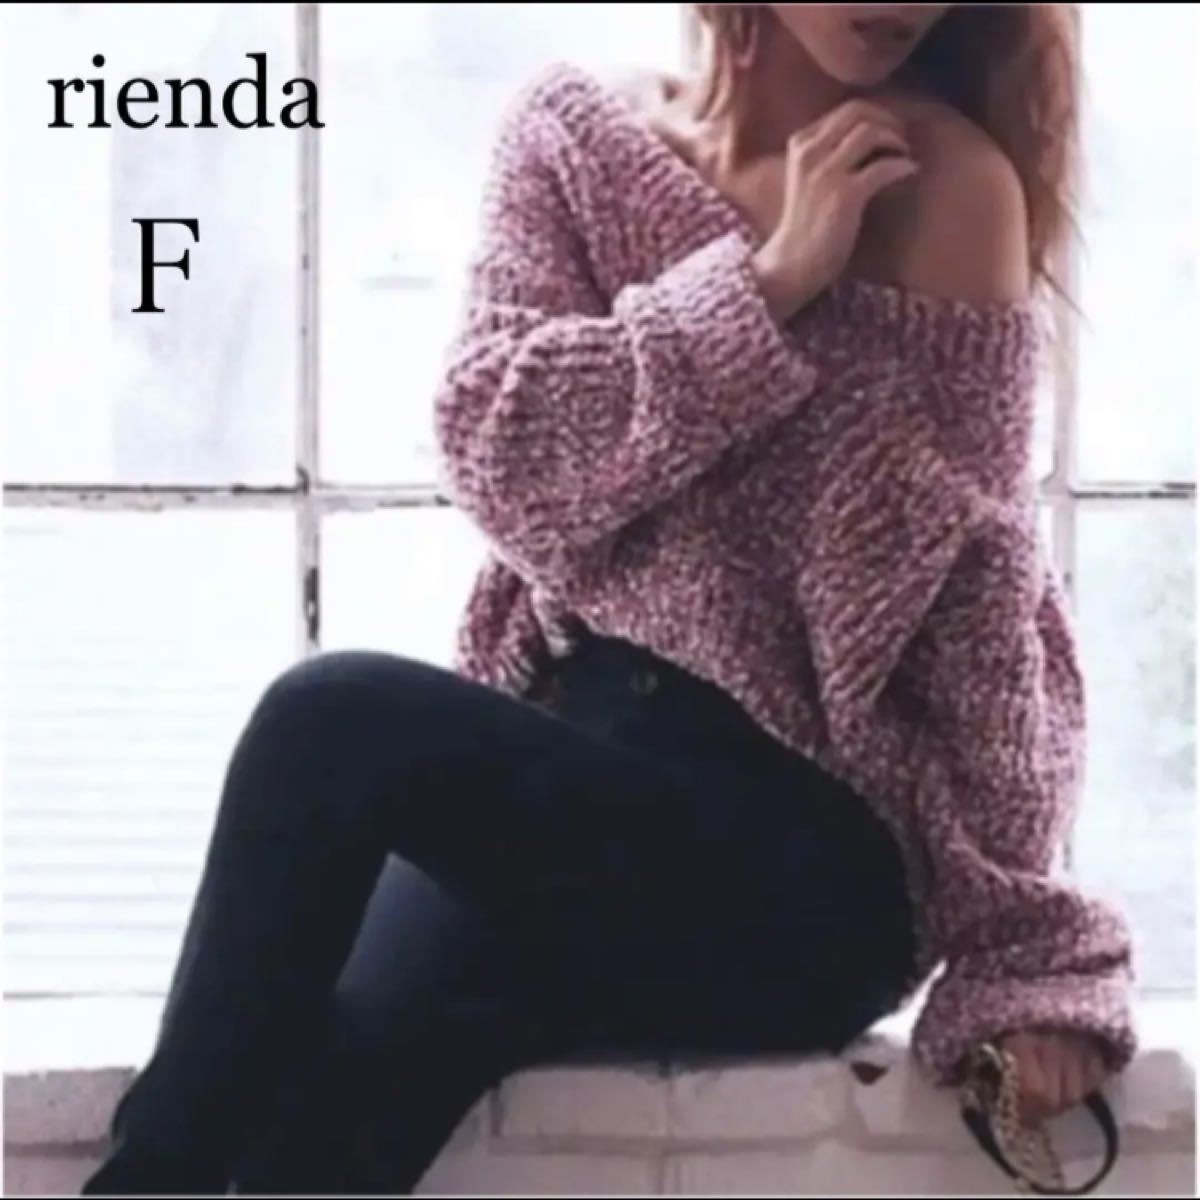 先着購入特典 rienda グリッダーラメ ニット 海外買付-ファッション,レディースファッション - ekumudini.com